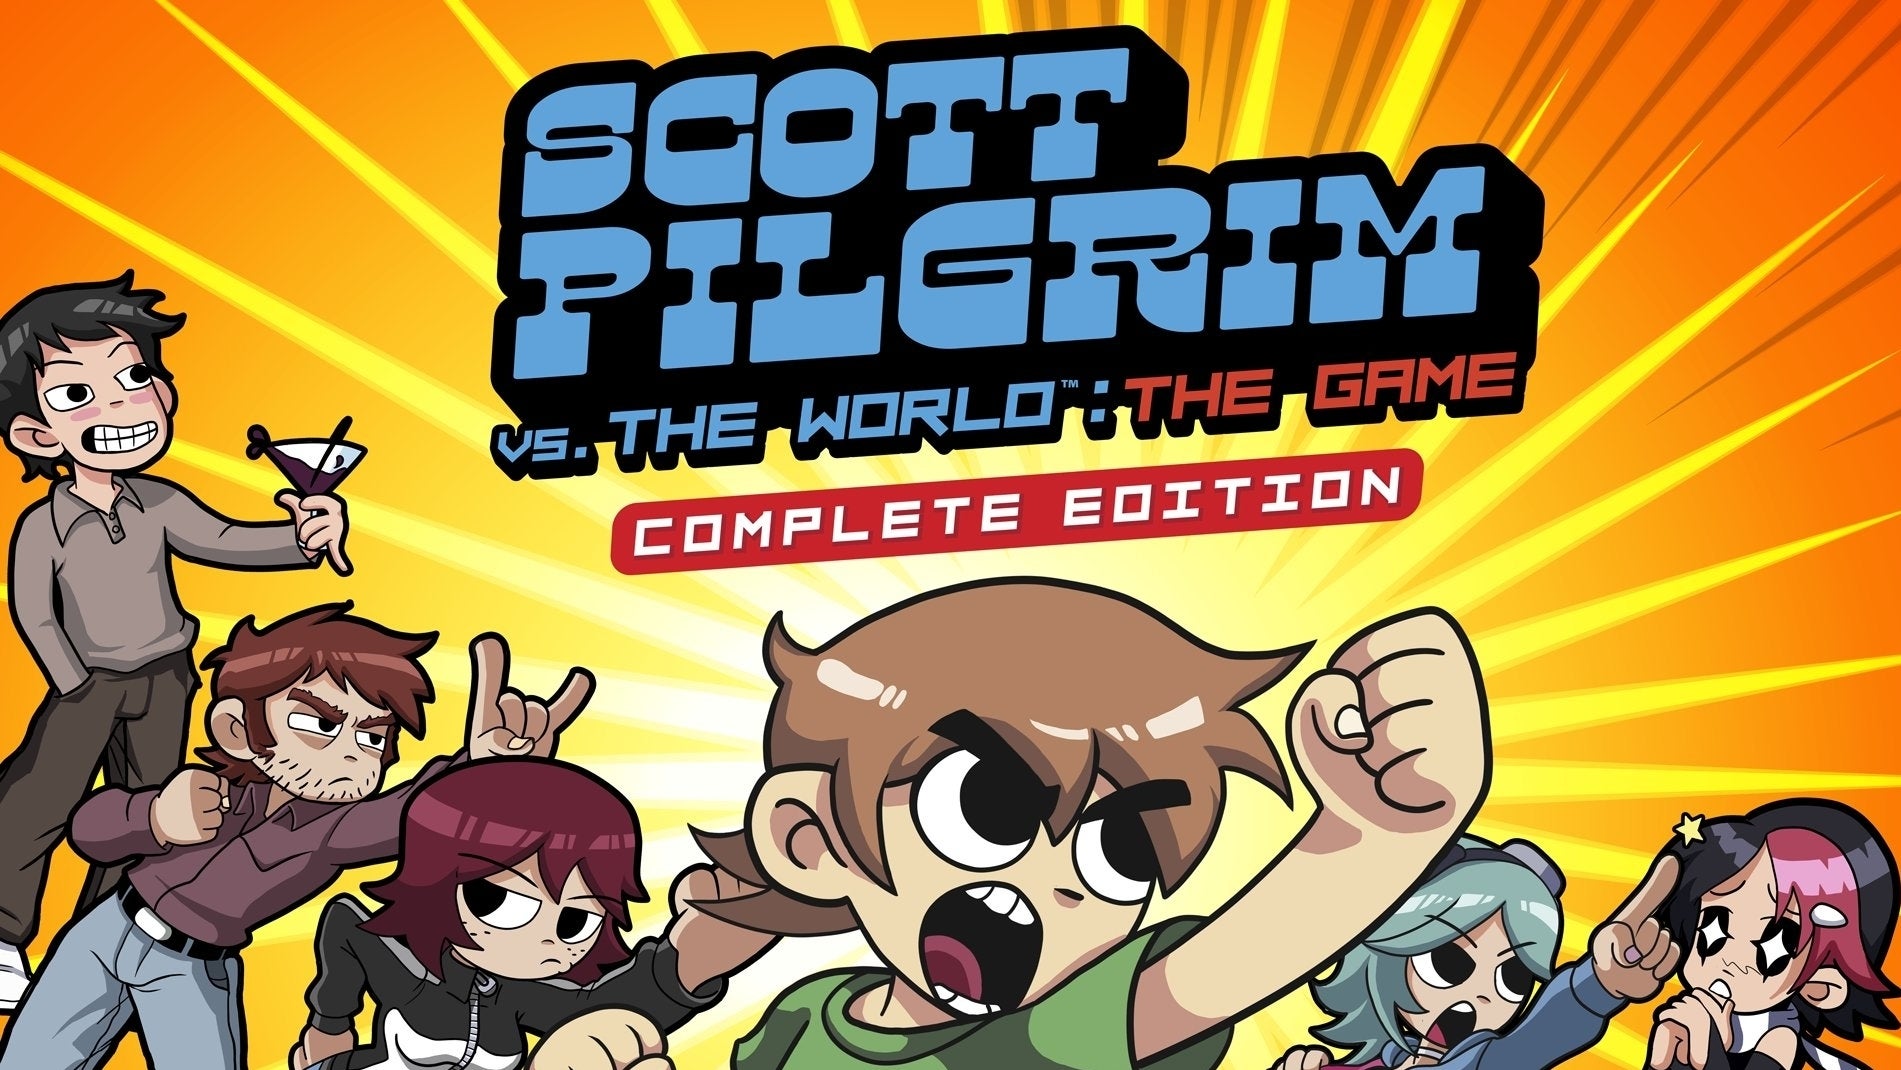 Immagine di Scott Pilgrim vs. The World: The Game Complete Edition avrà anche un'edizione fisica grazie a Limited Run Games